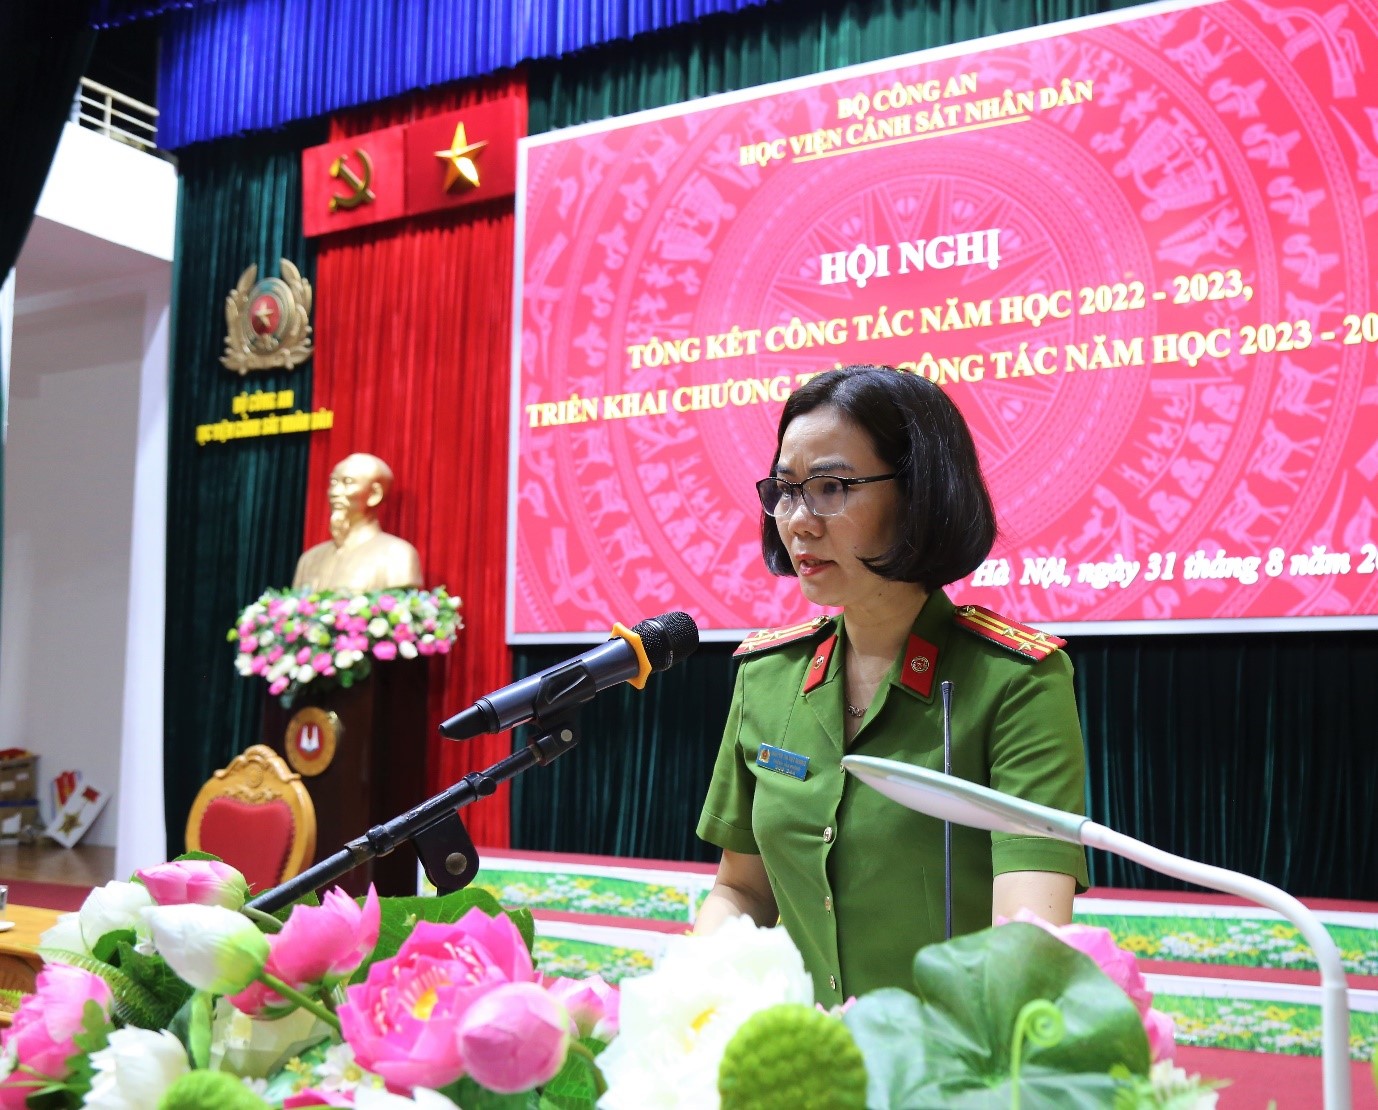 Thượng tá, TS Nguyễn Thị Việt Hương, Chánh Văn phòng Học viện trình bày báo cáo kết quả công tác năm học 2022 - 2023 và phương hướng trọng tâm năm học 2023 - 2024